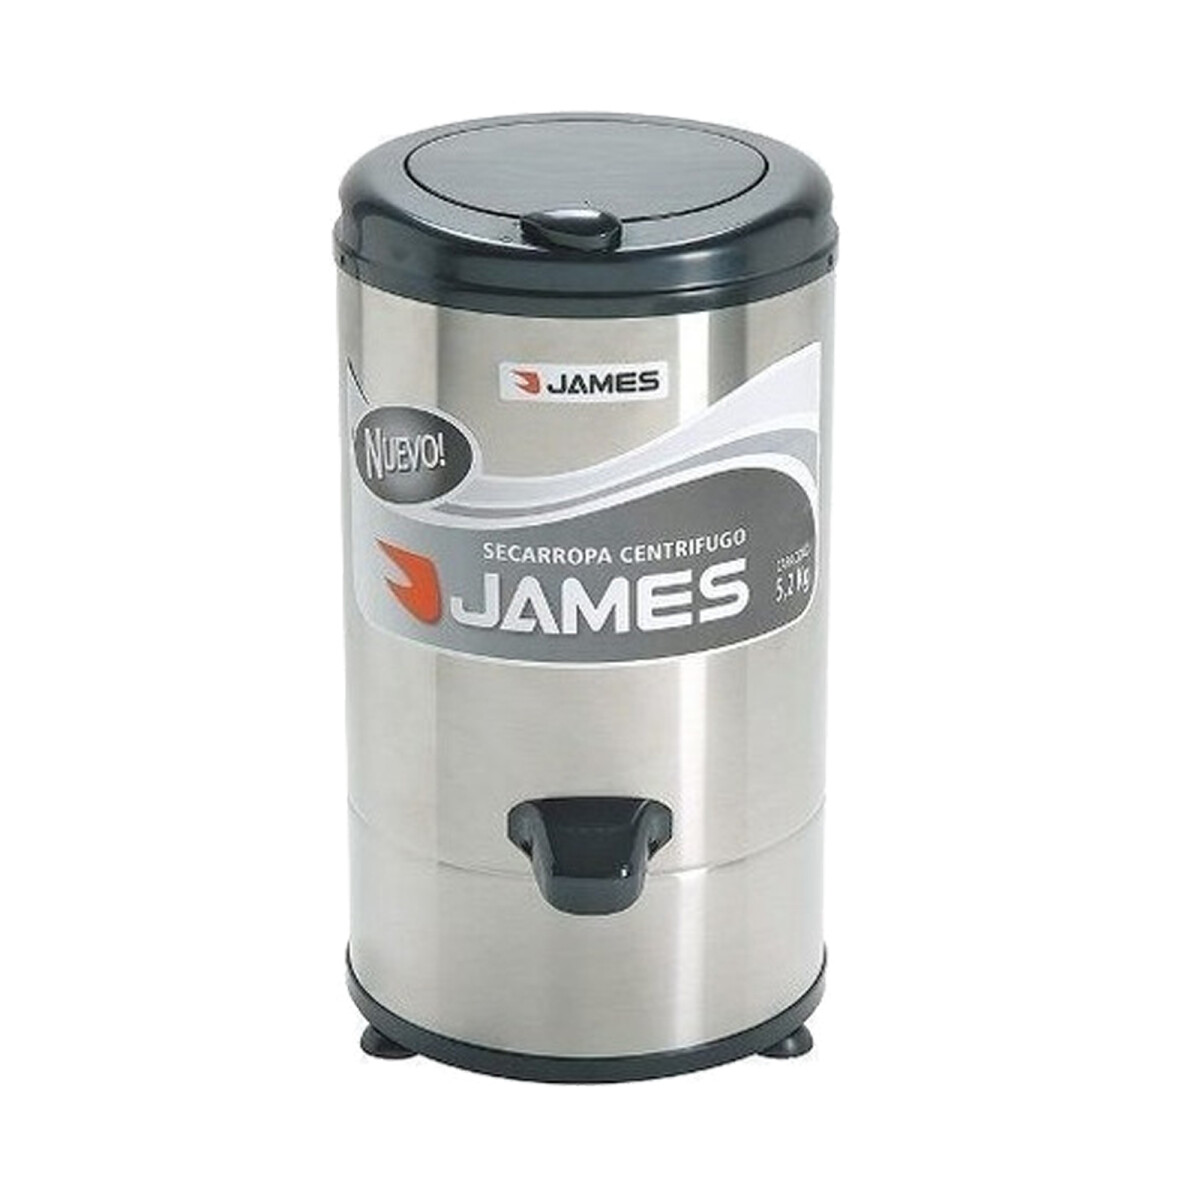 Centrifugadora James 5,2kg.a/inox. C-652 